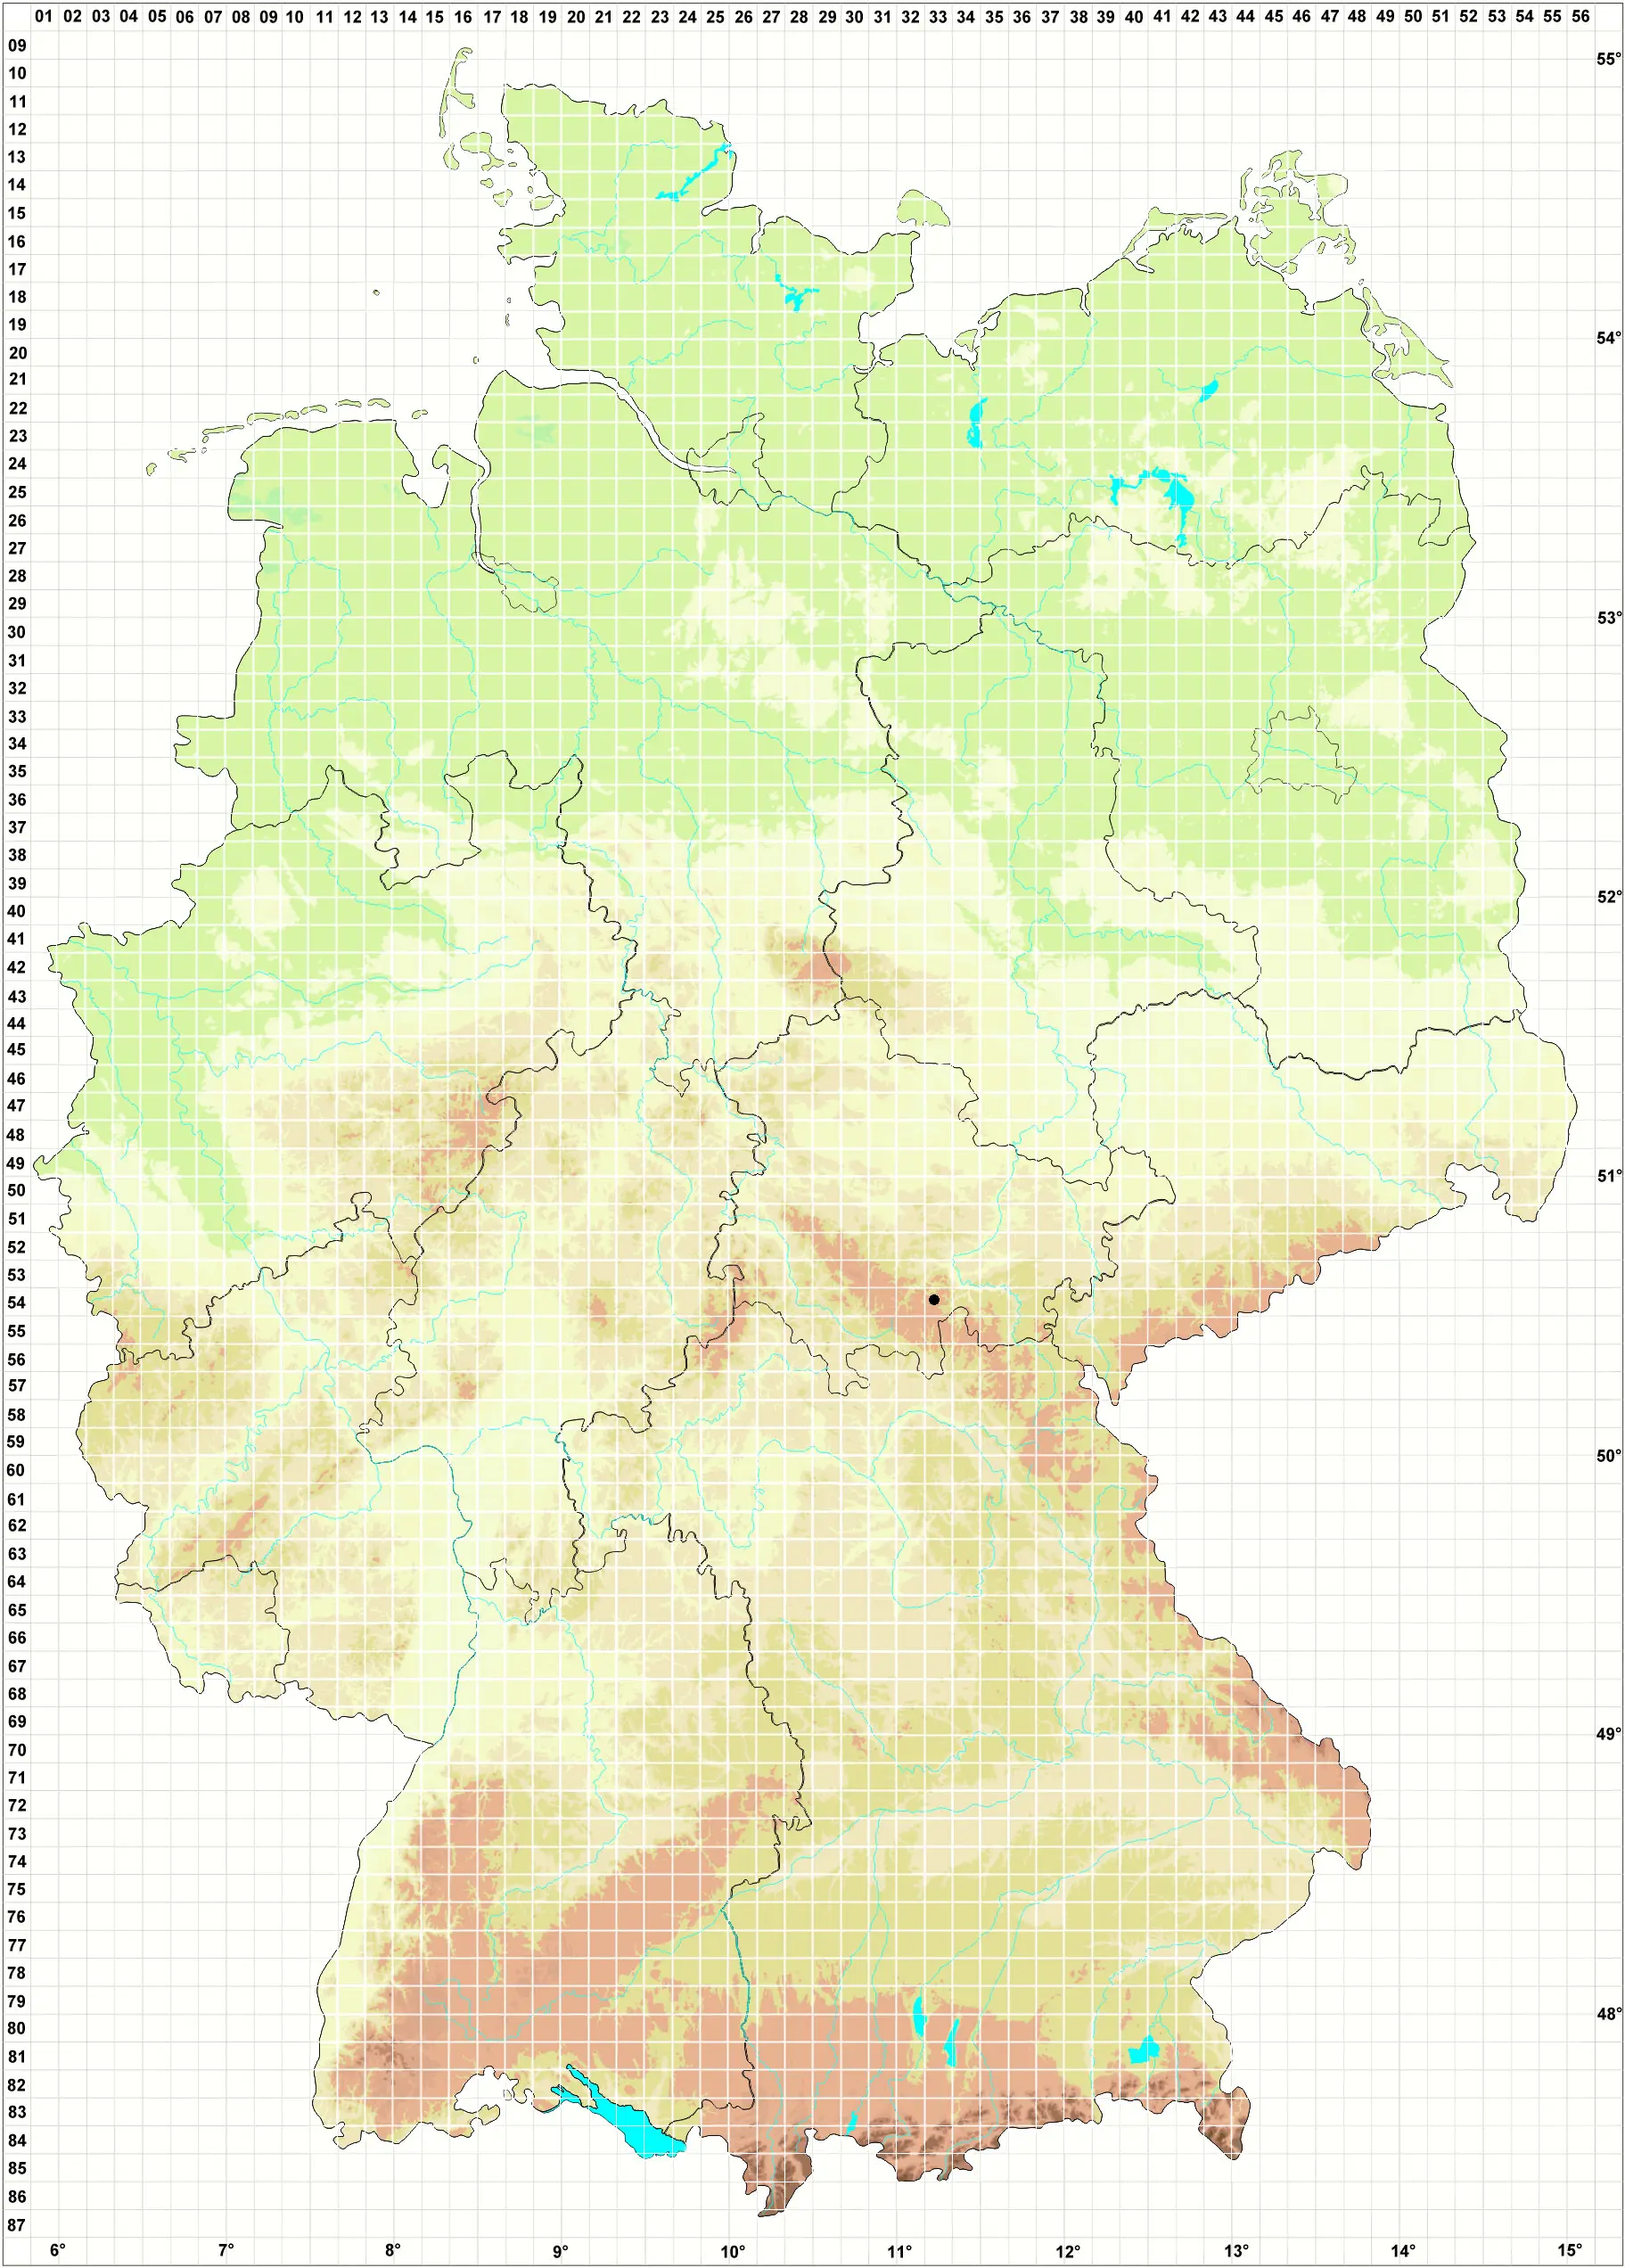 Karte H. Grünberg 12.05.2012